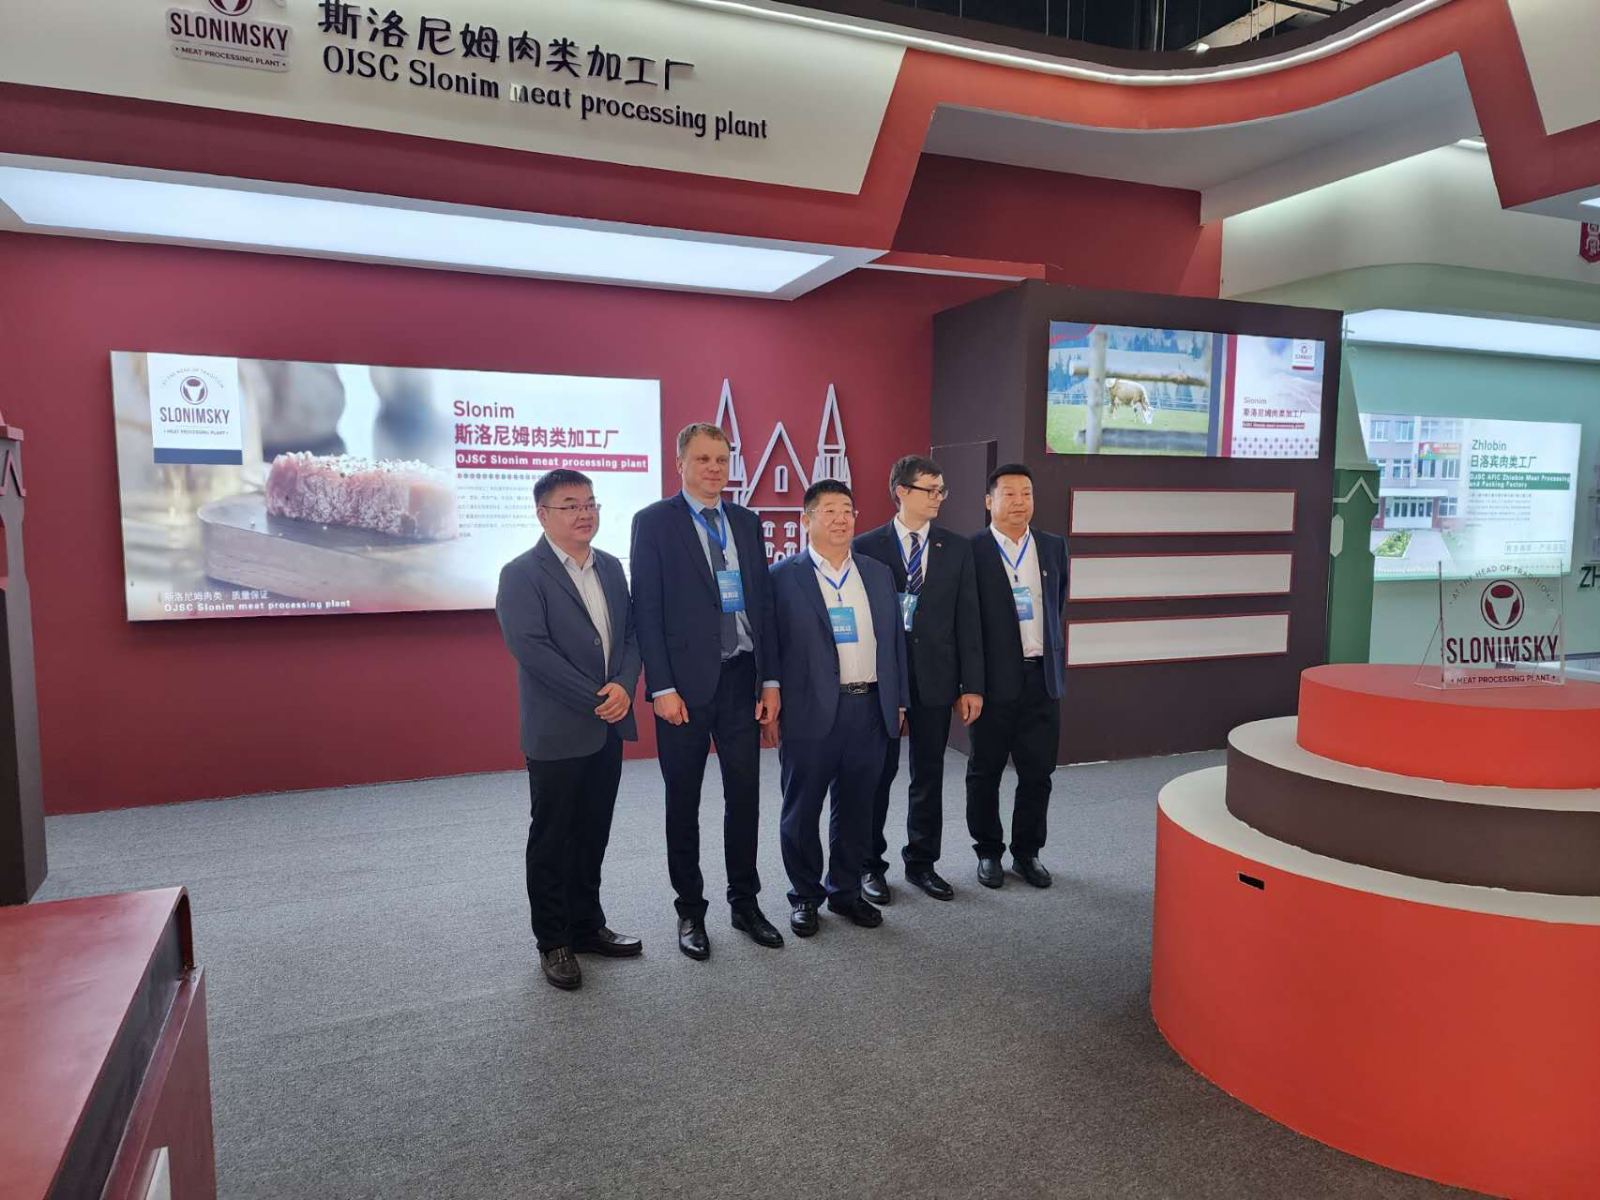 В Китайской Народной Республике прошло торжественное открытие фирменного магазина ОАО “Слонимский мясокмбинат”